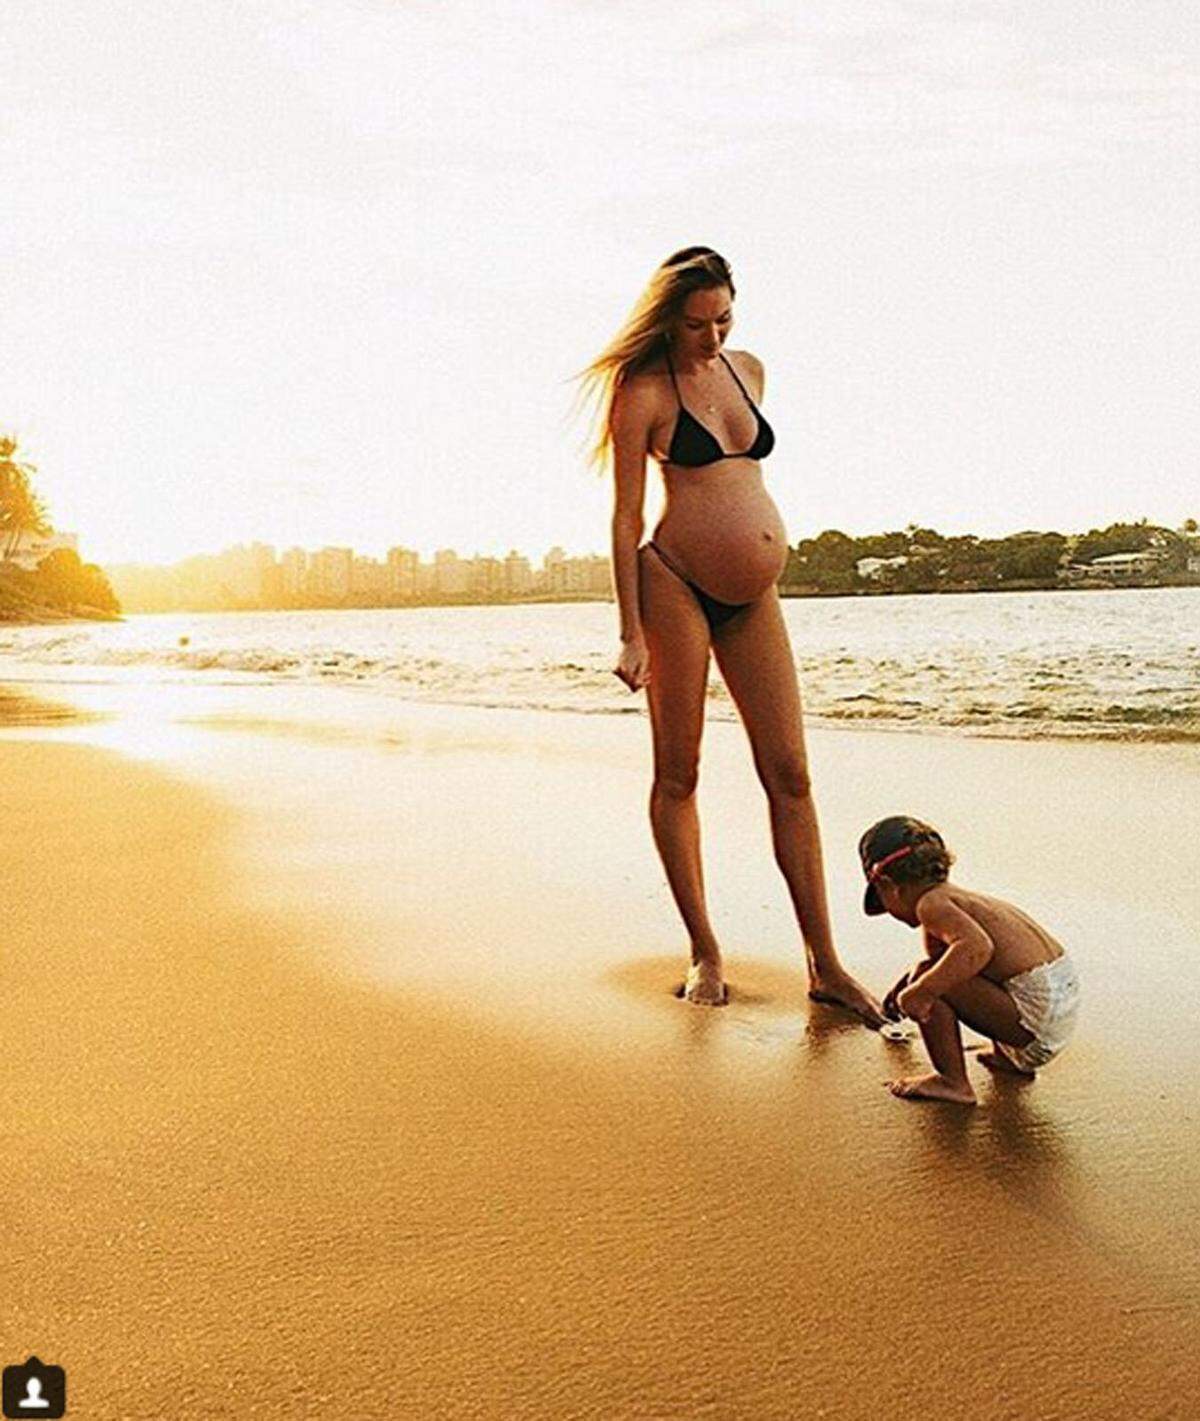 Victoria's Secret Engel Candice Swanepoel verbrachte ihre Schwangerschaft am Strand.